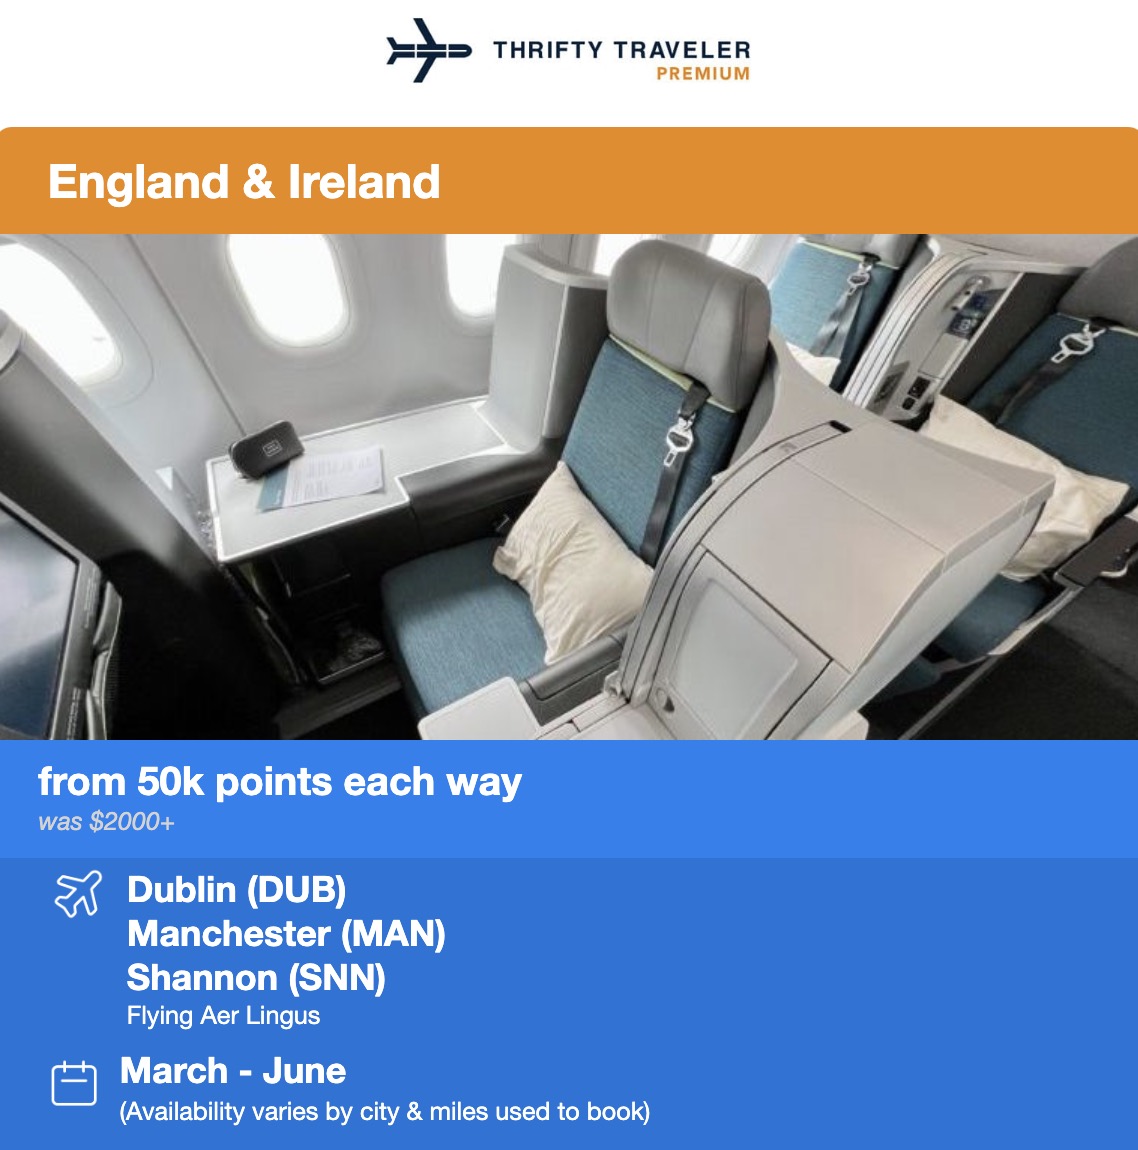 Dublin business class flight deal